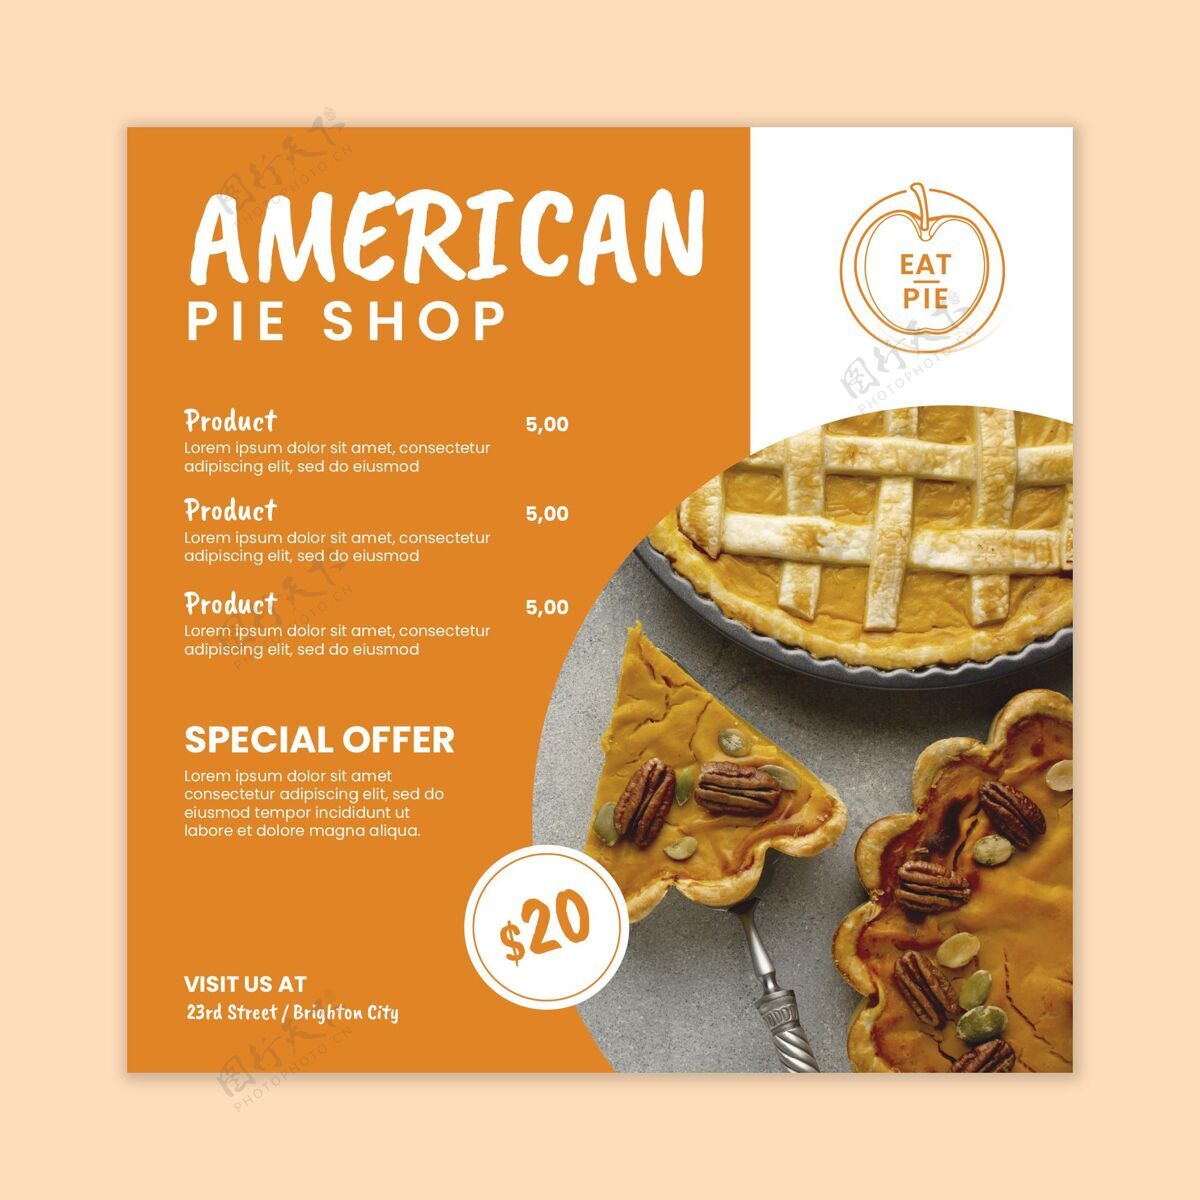 面包店美国派传单模板派美食美式